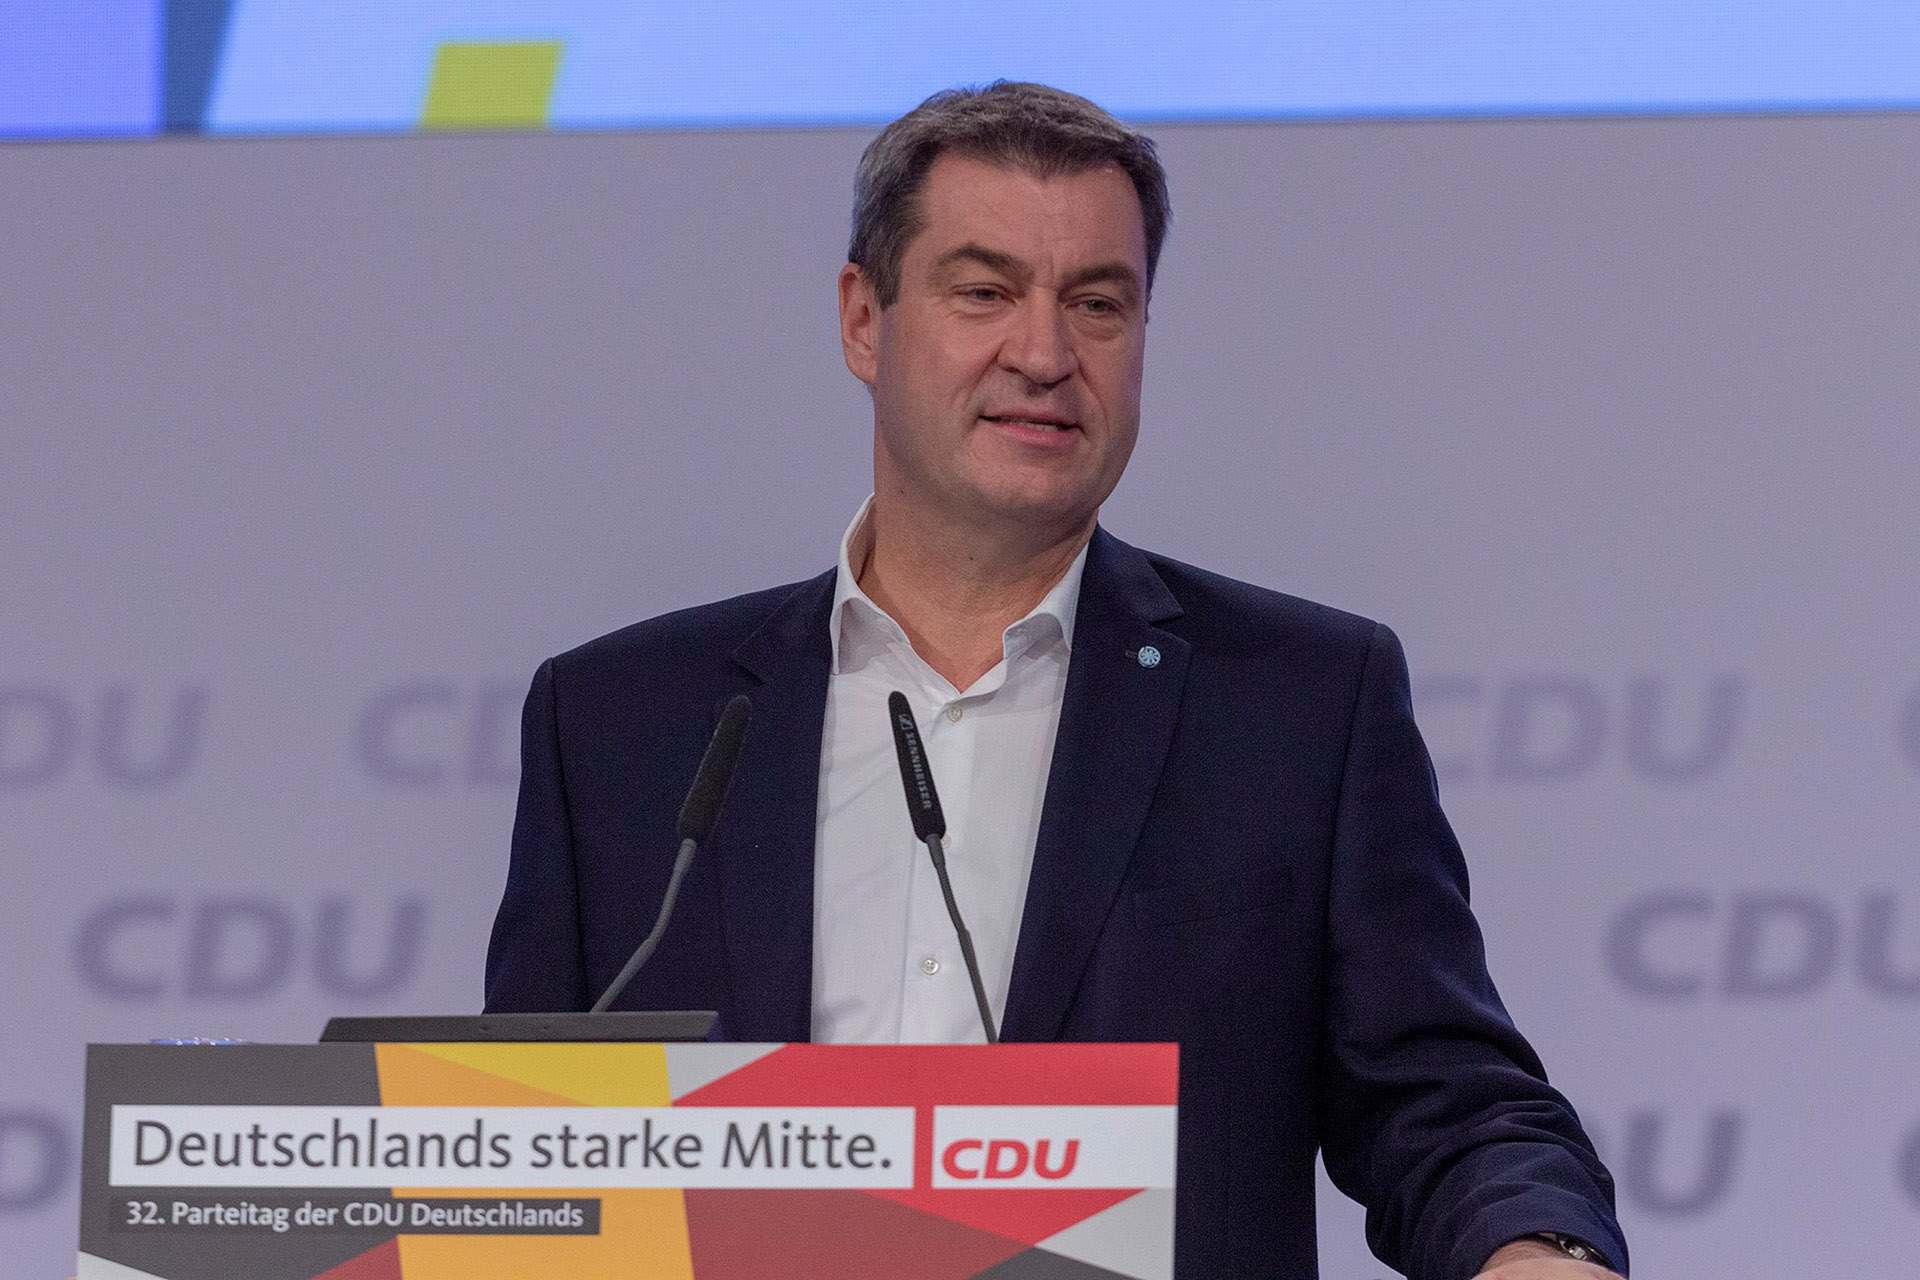 Bild: Olaf Kosinsky, 2019-11-23 Markus Söder CDU Parteitag by OlafKosinsky MG 6048, CC BY-SA 3.0, via Wikimedia Commons (Bildgröße geändert)